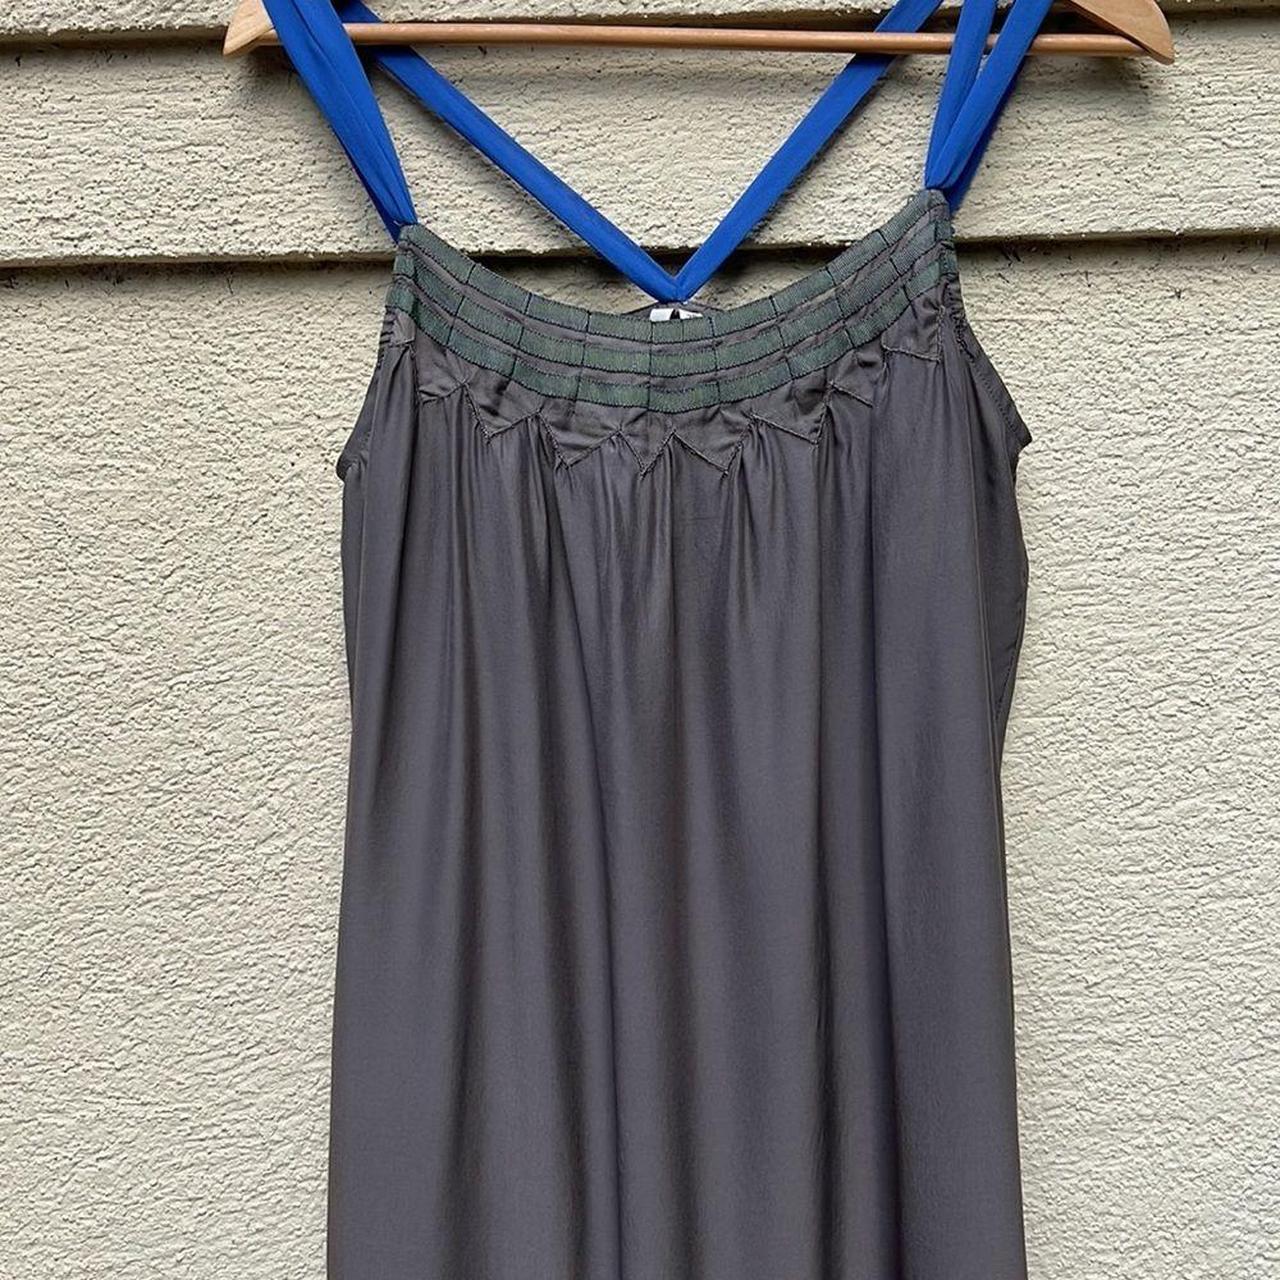 Product Image 3 - IRO 100% silk dress size